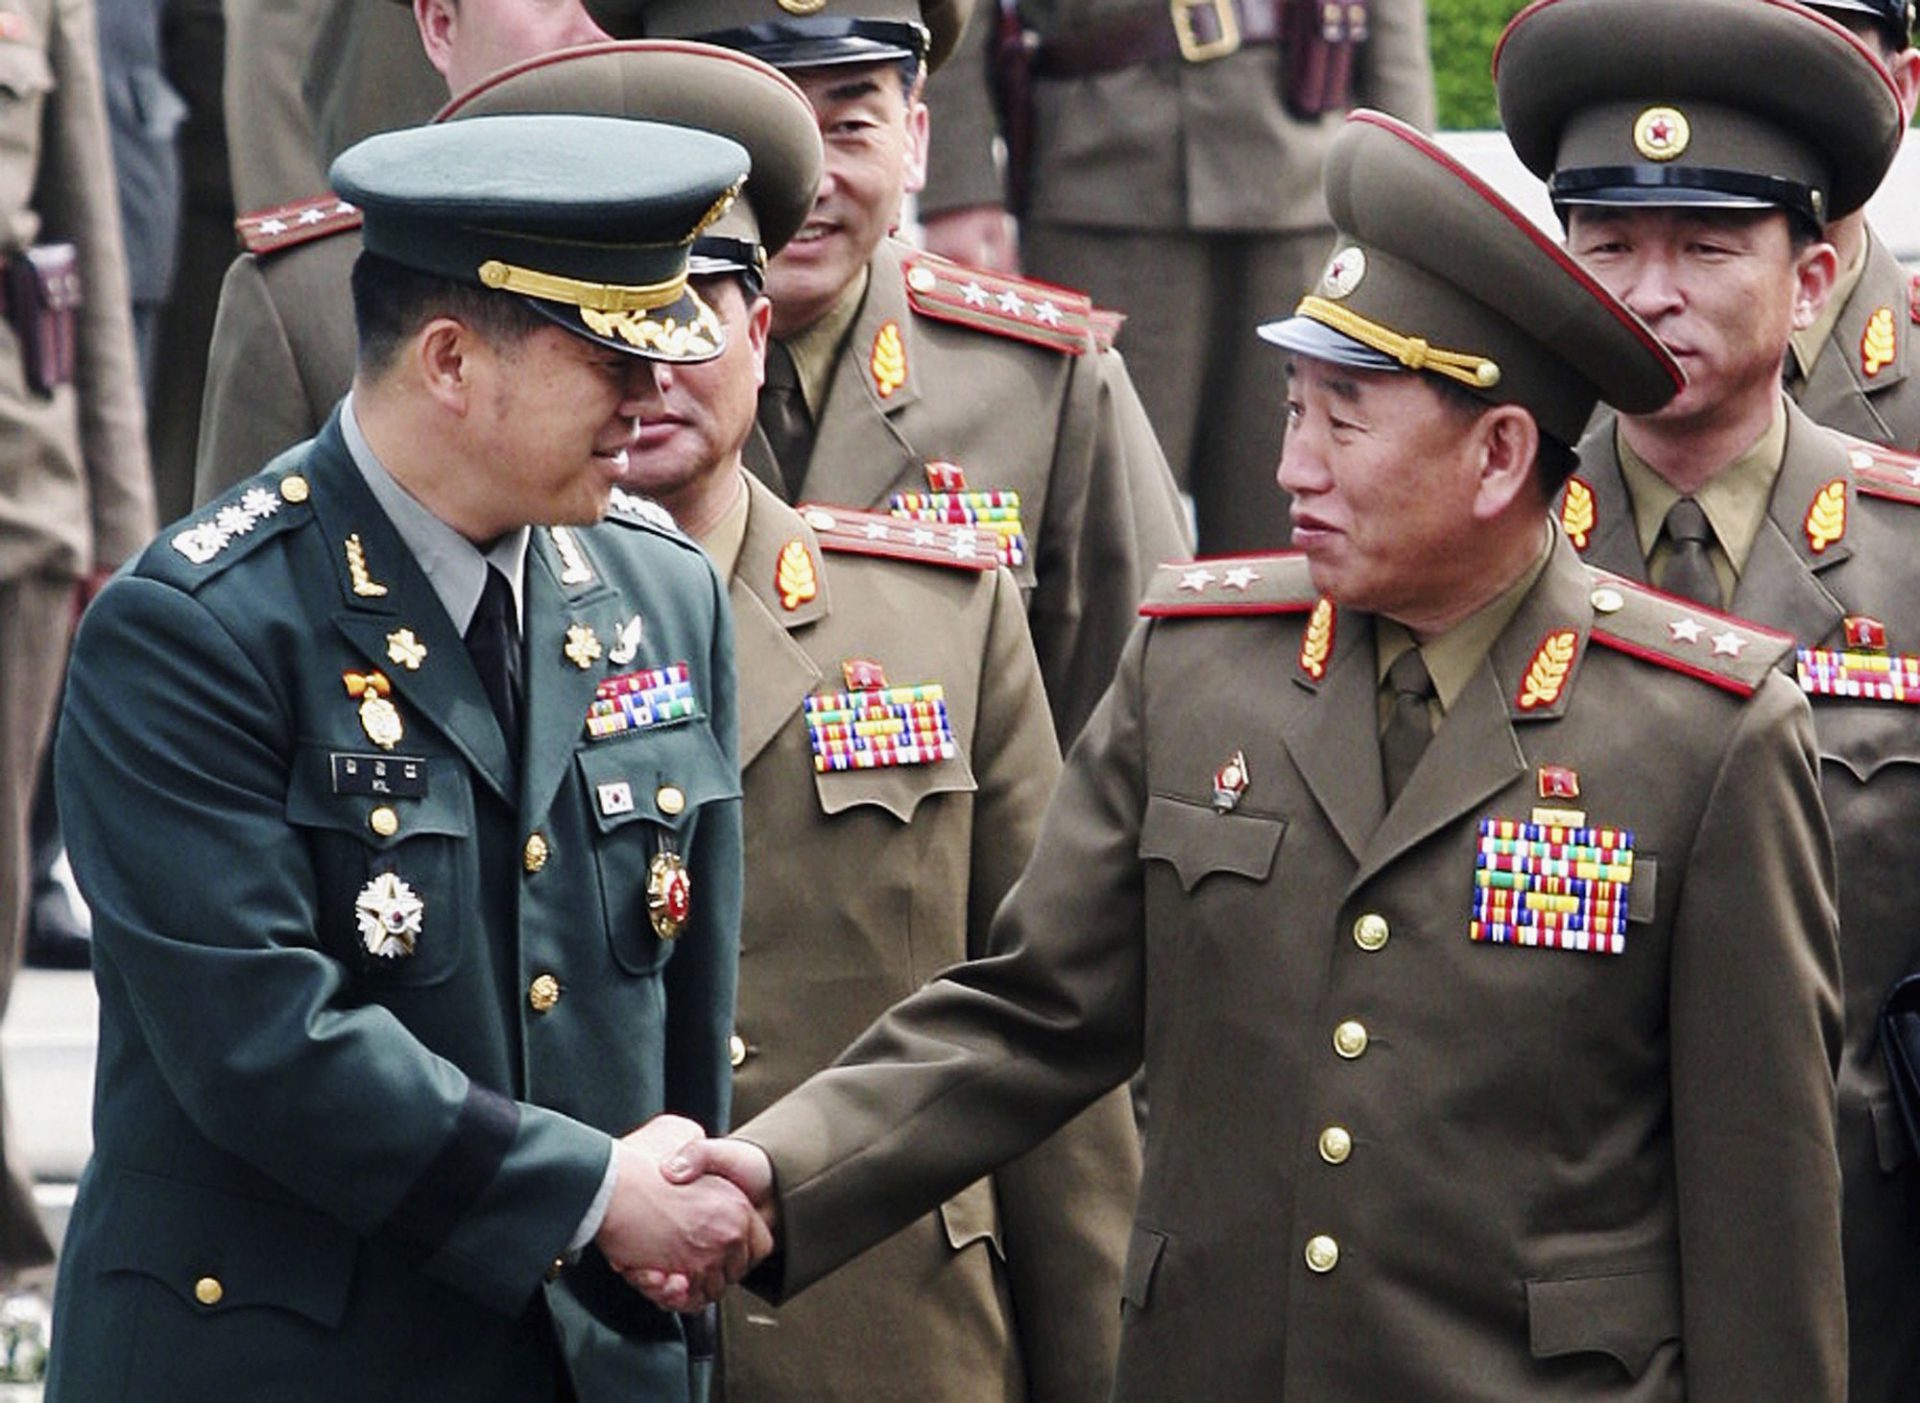 Фото генералов северной кореи с орденами на штанах